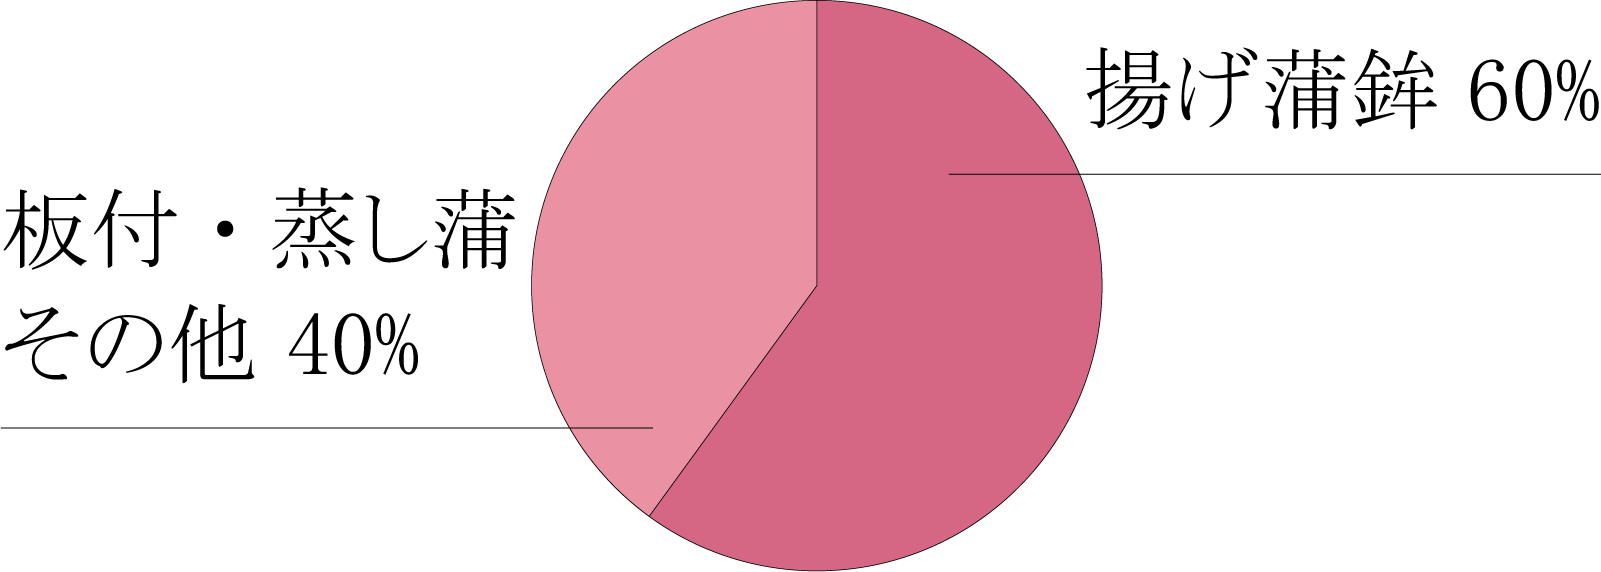 製造割合円グラフ